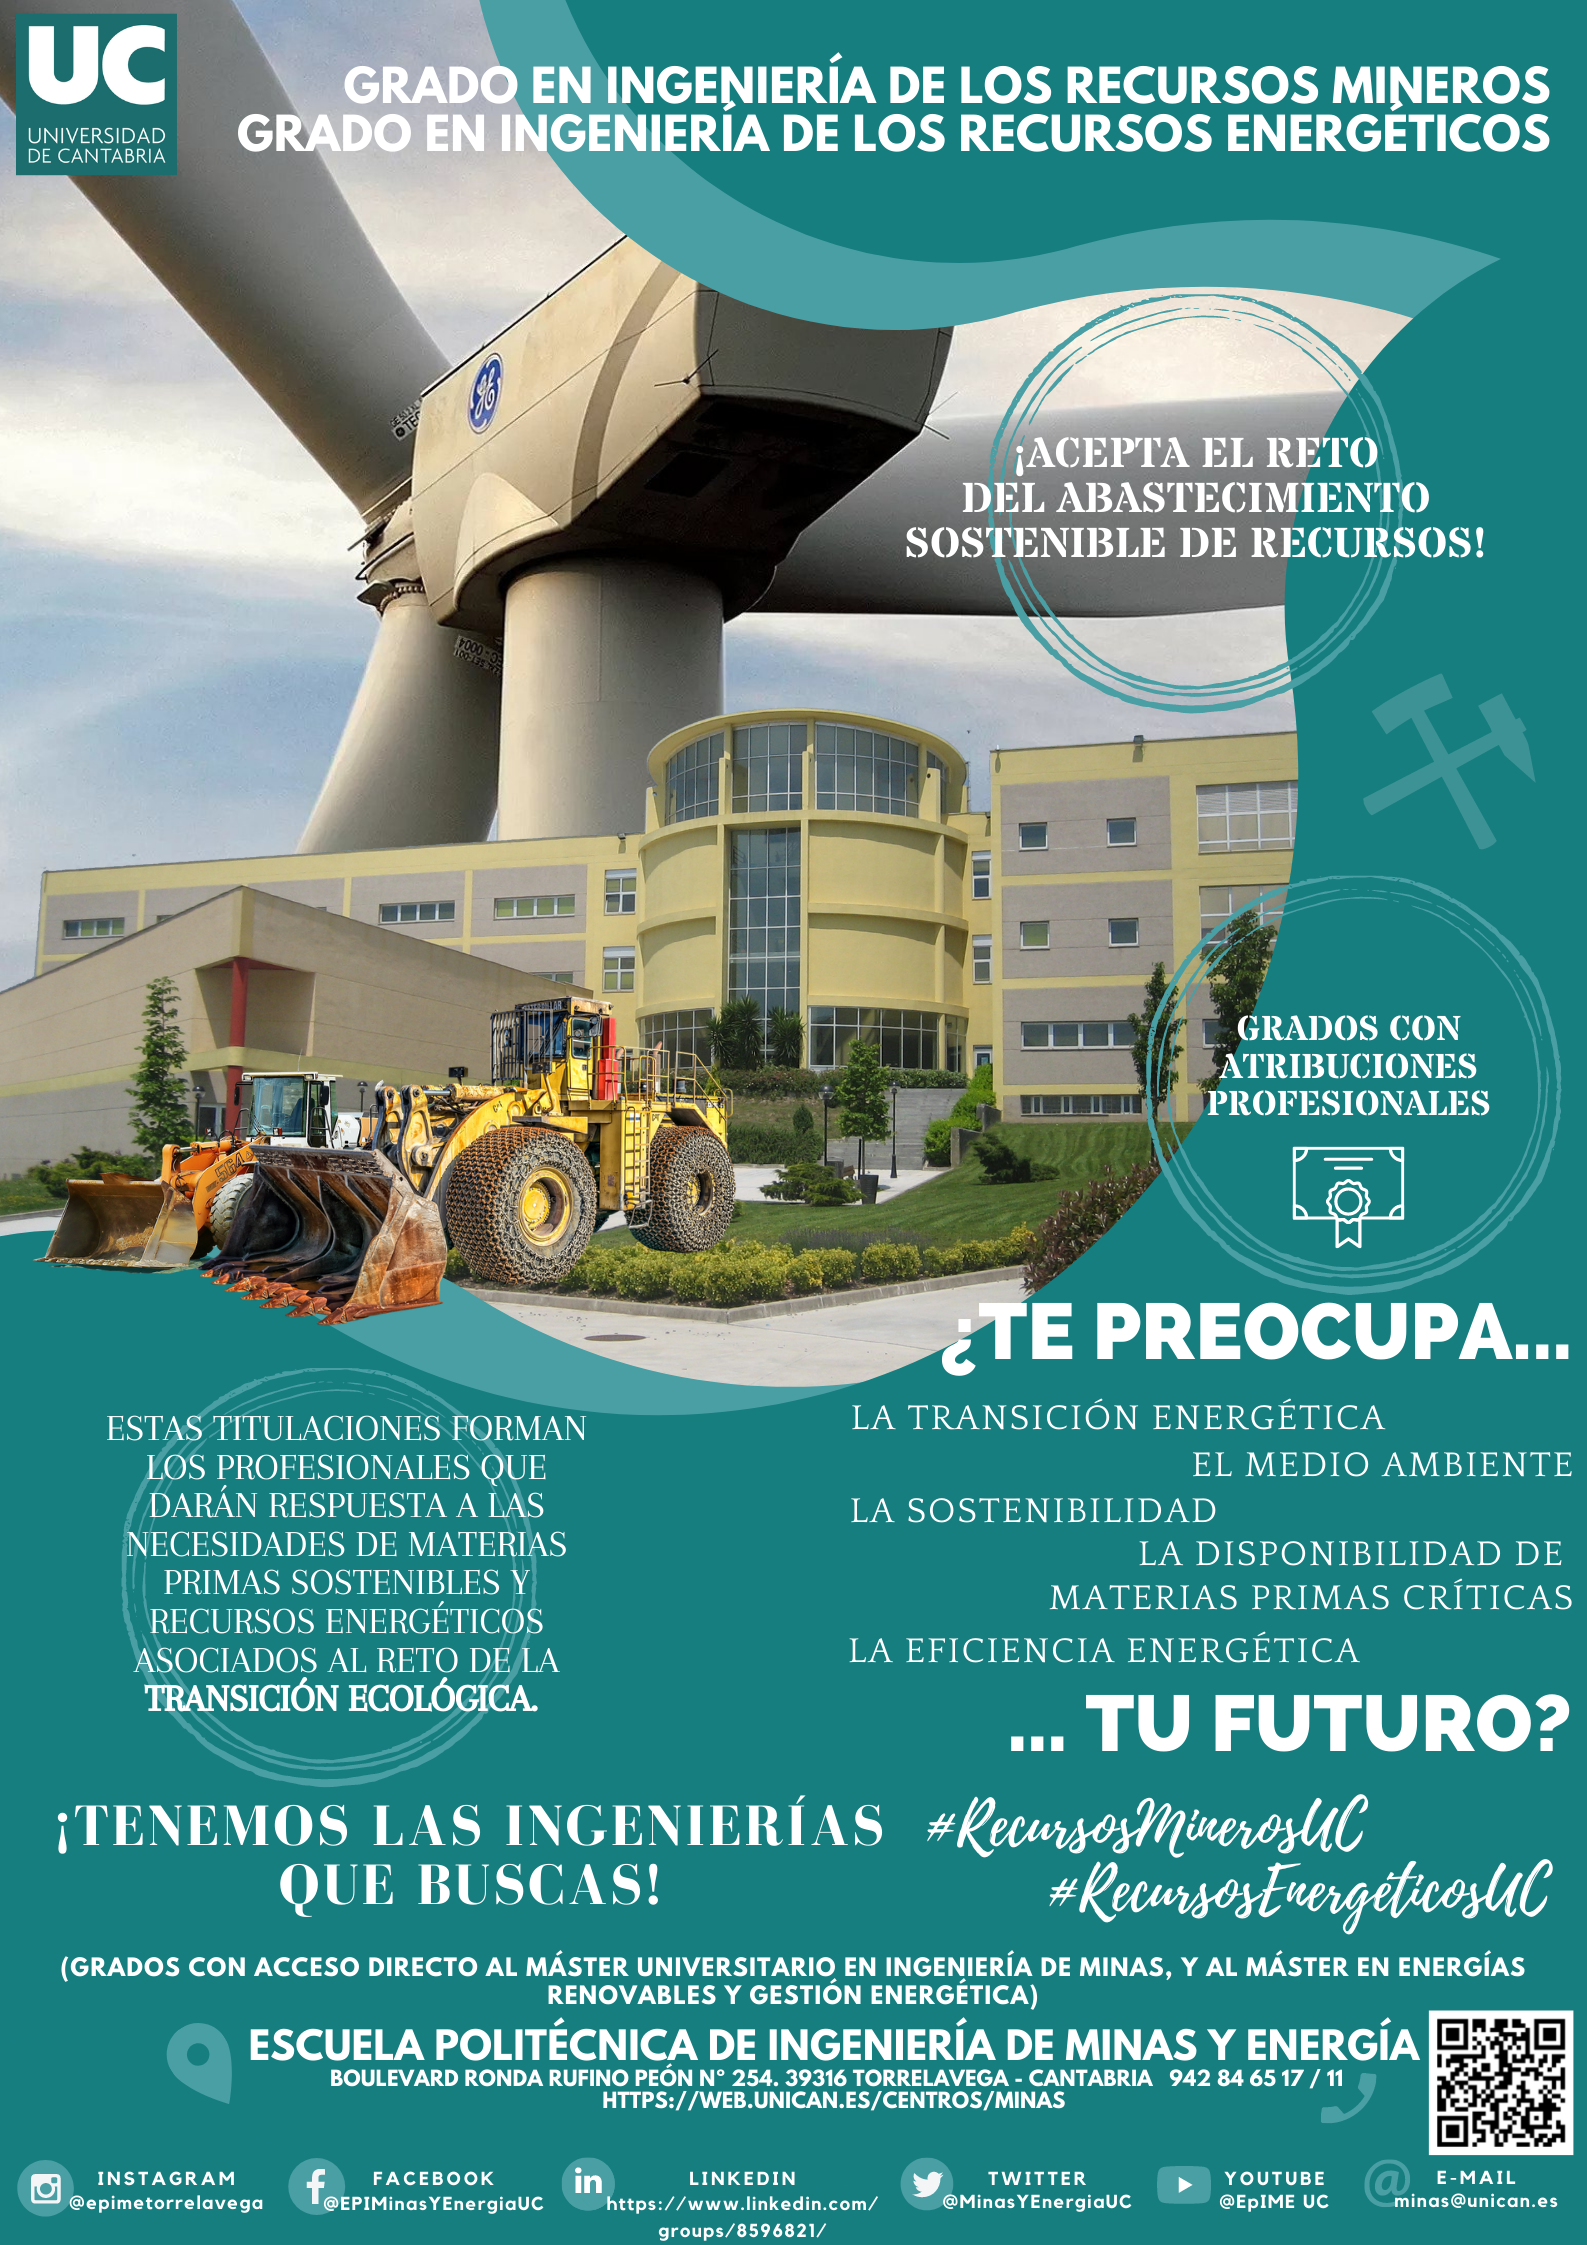 Oferta Formativa de la Escuela Politécnica de Ingeniería de Minas y Energía